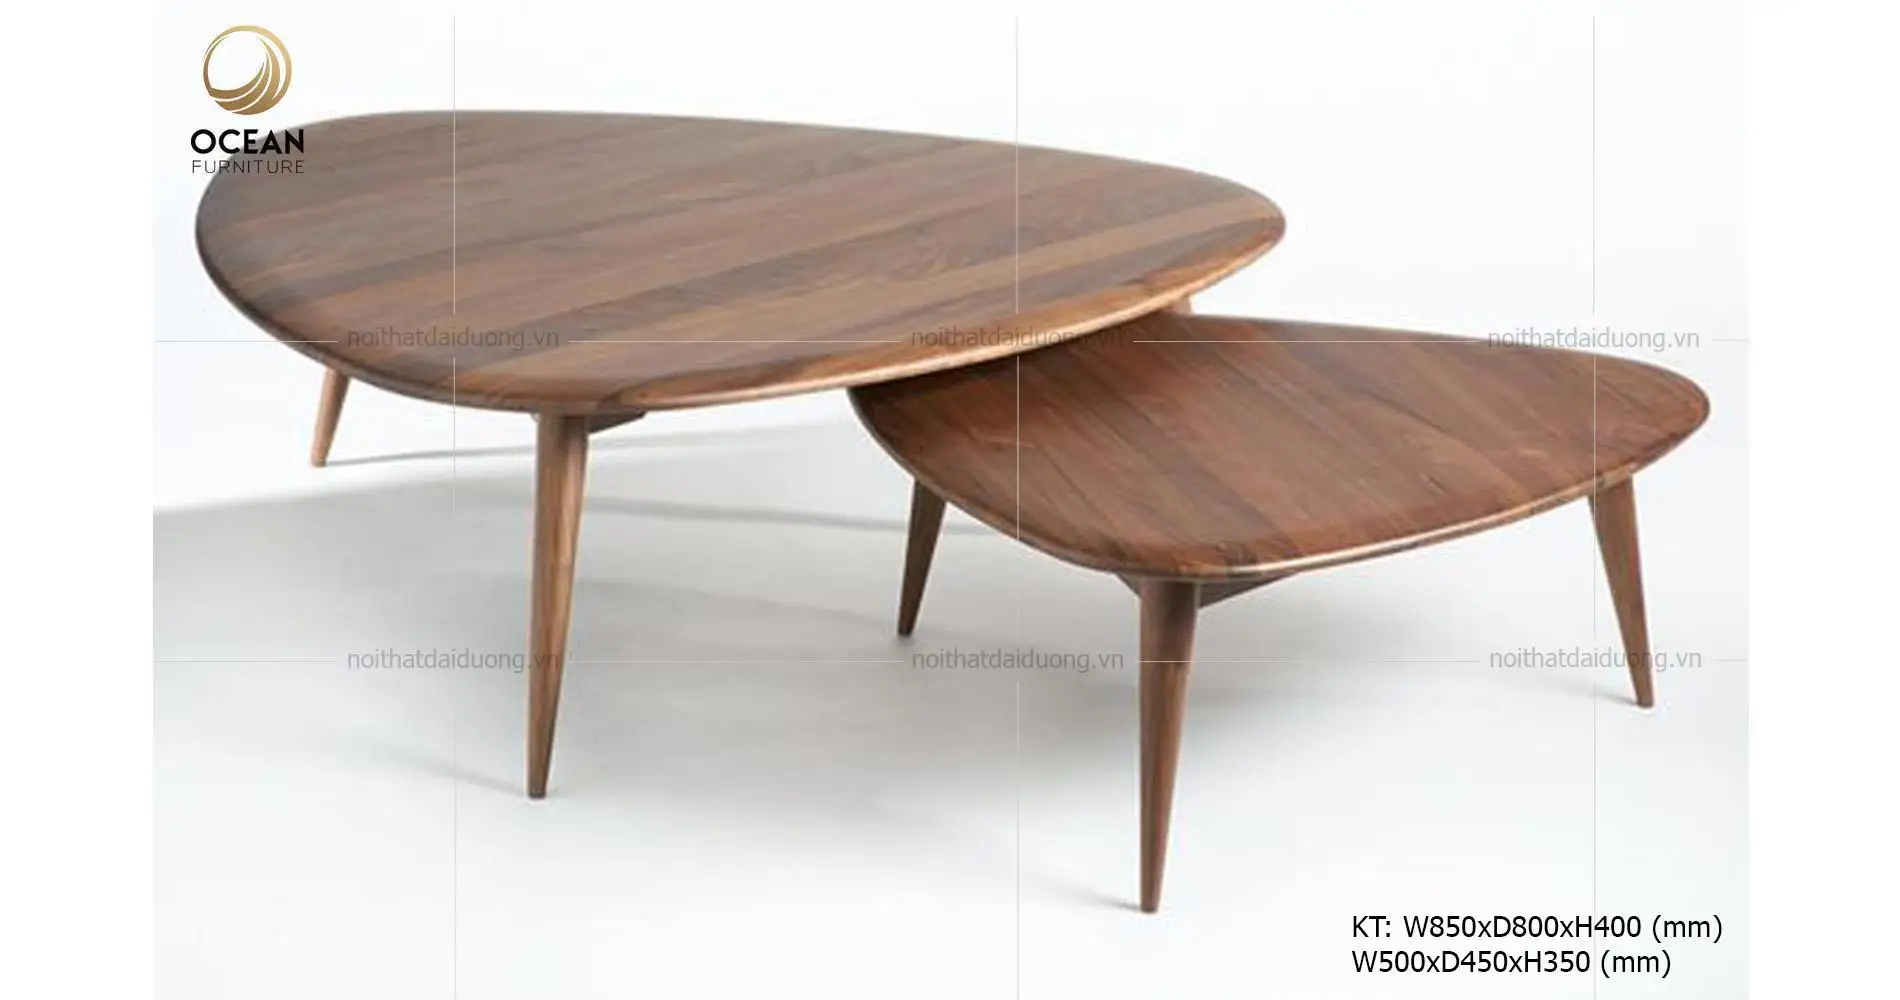 Walnut Wood Tea Table Set TT025, Customized Tea Tables Wholesale Furniture Design Living Room